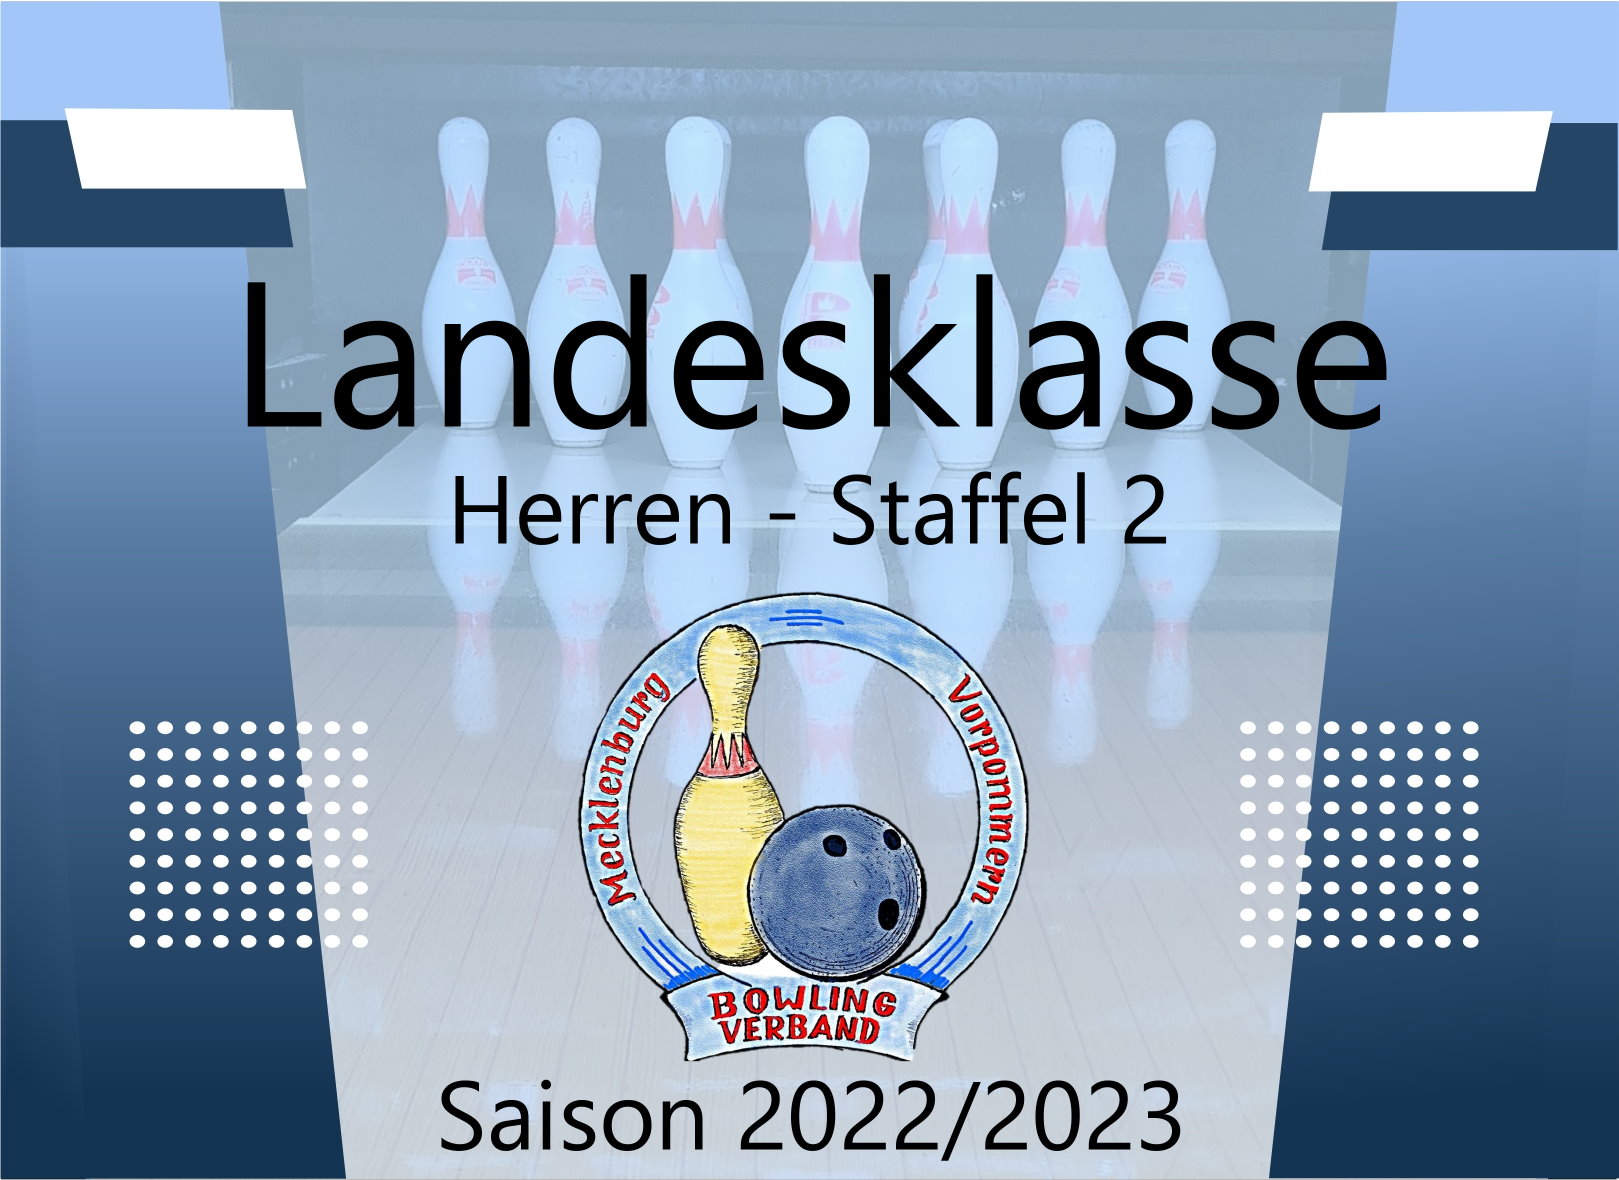 Landesklasse Herren Staffel 2 - 1. Spieltag